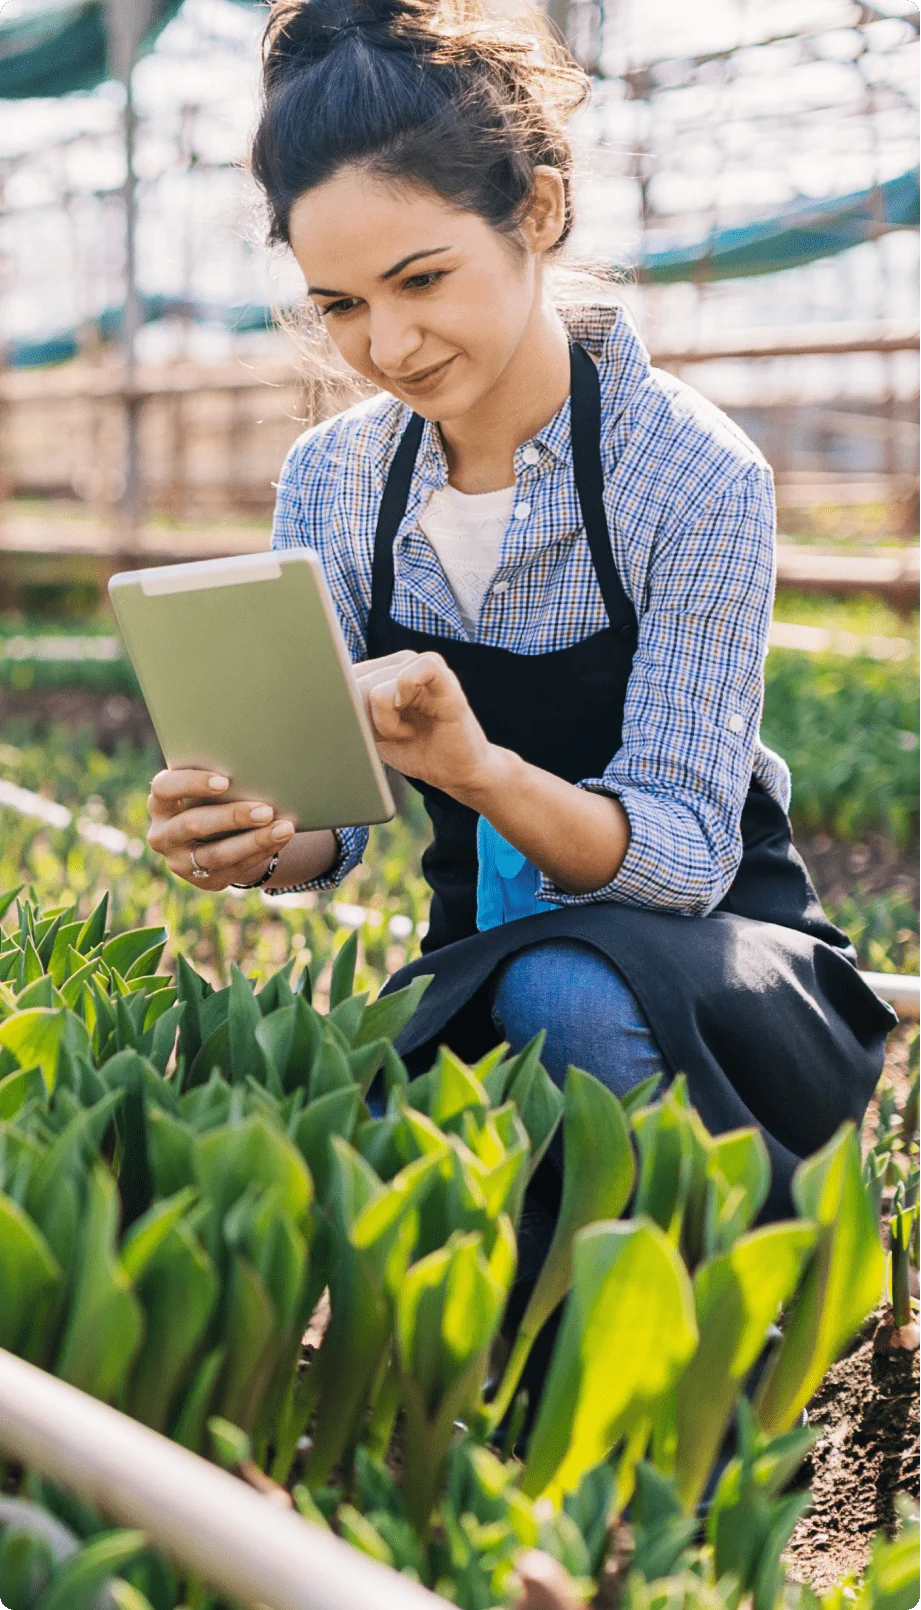 Une femme utilise sa tablette pour son travail dans un jardin.